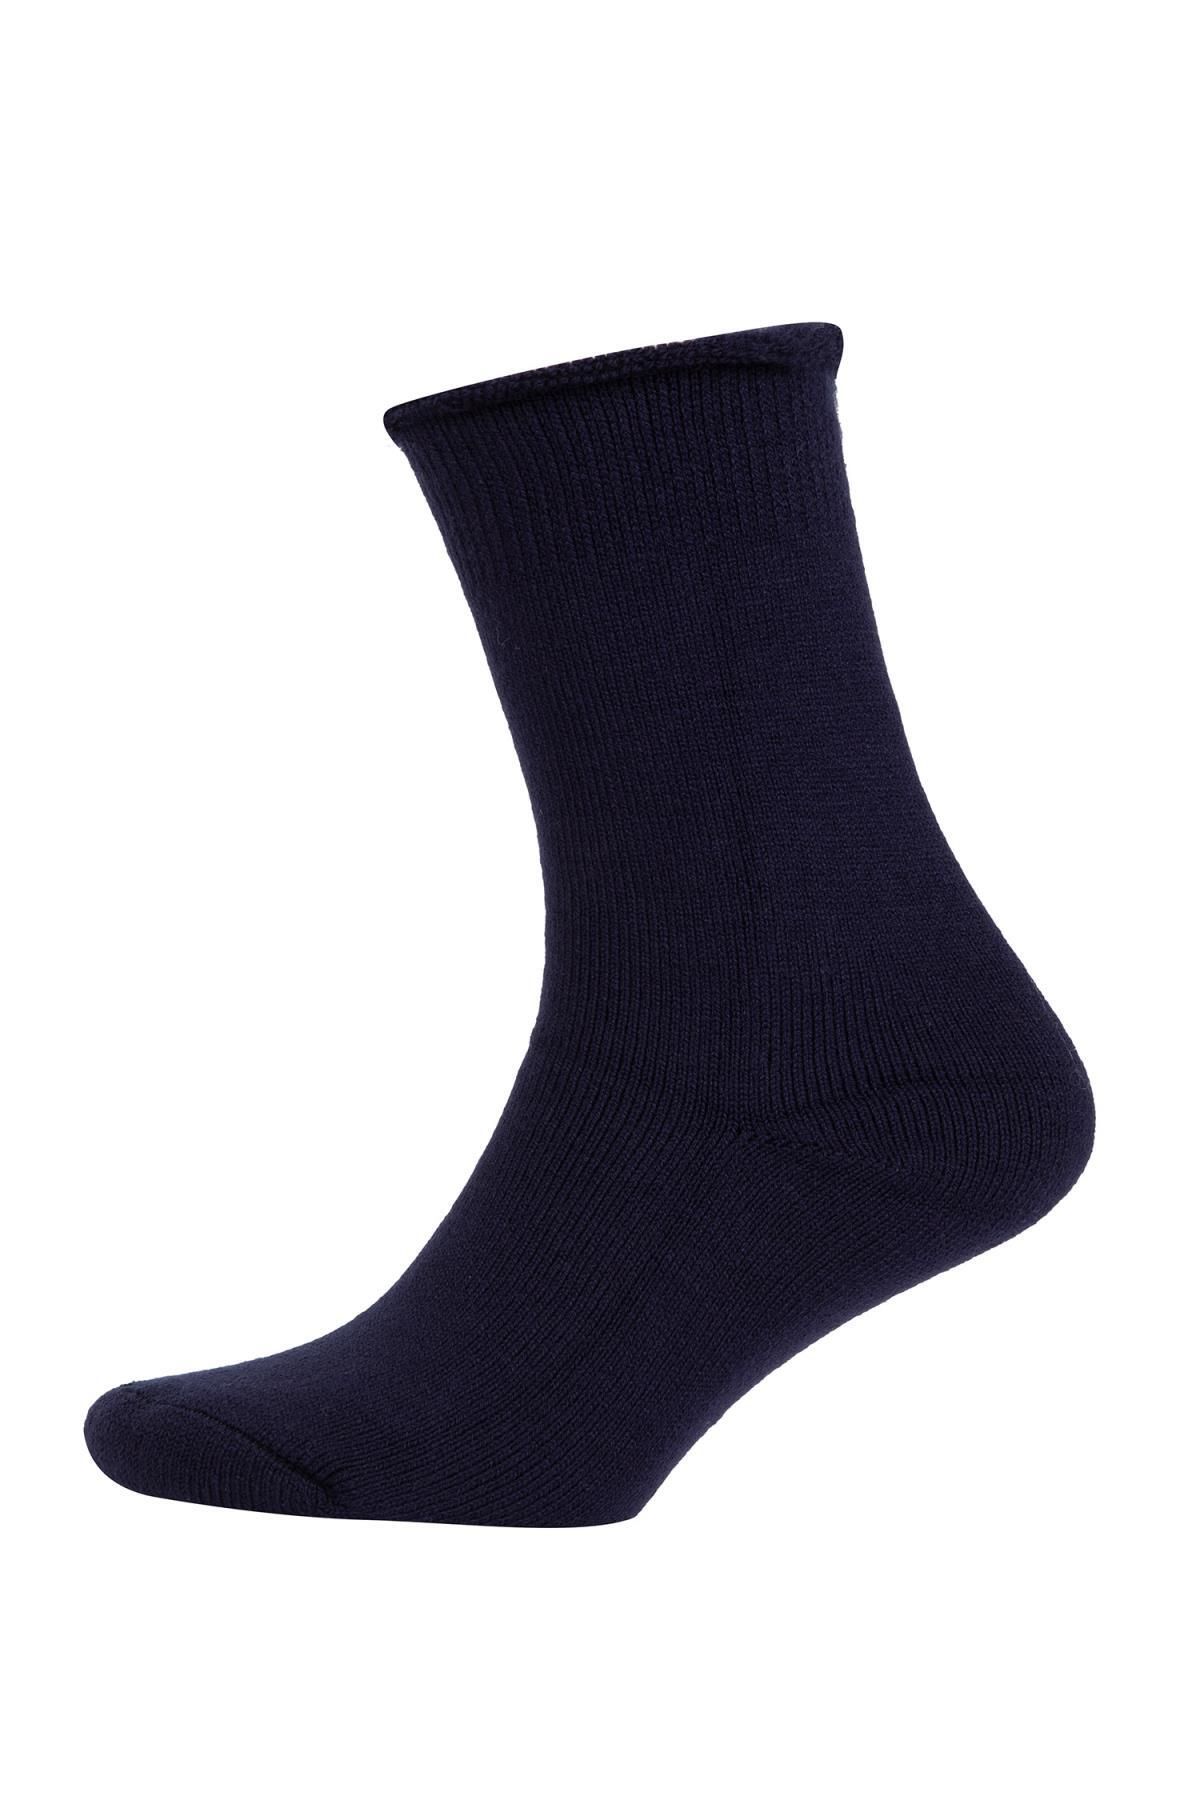 Defacto Erkek Termal Çorap A8184axns